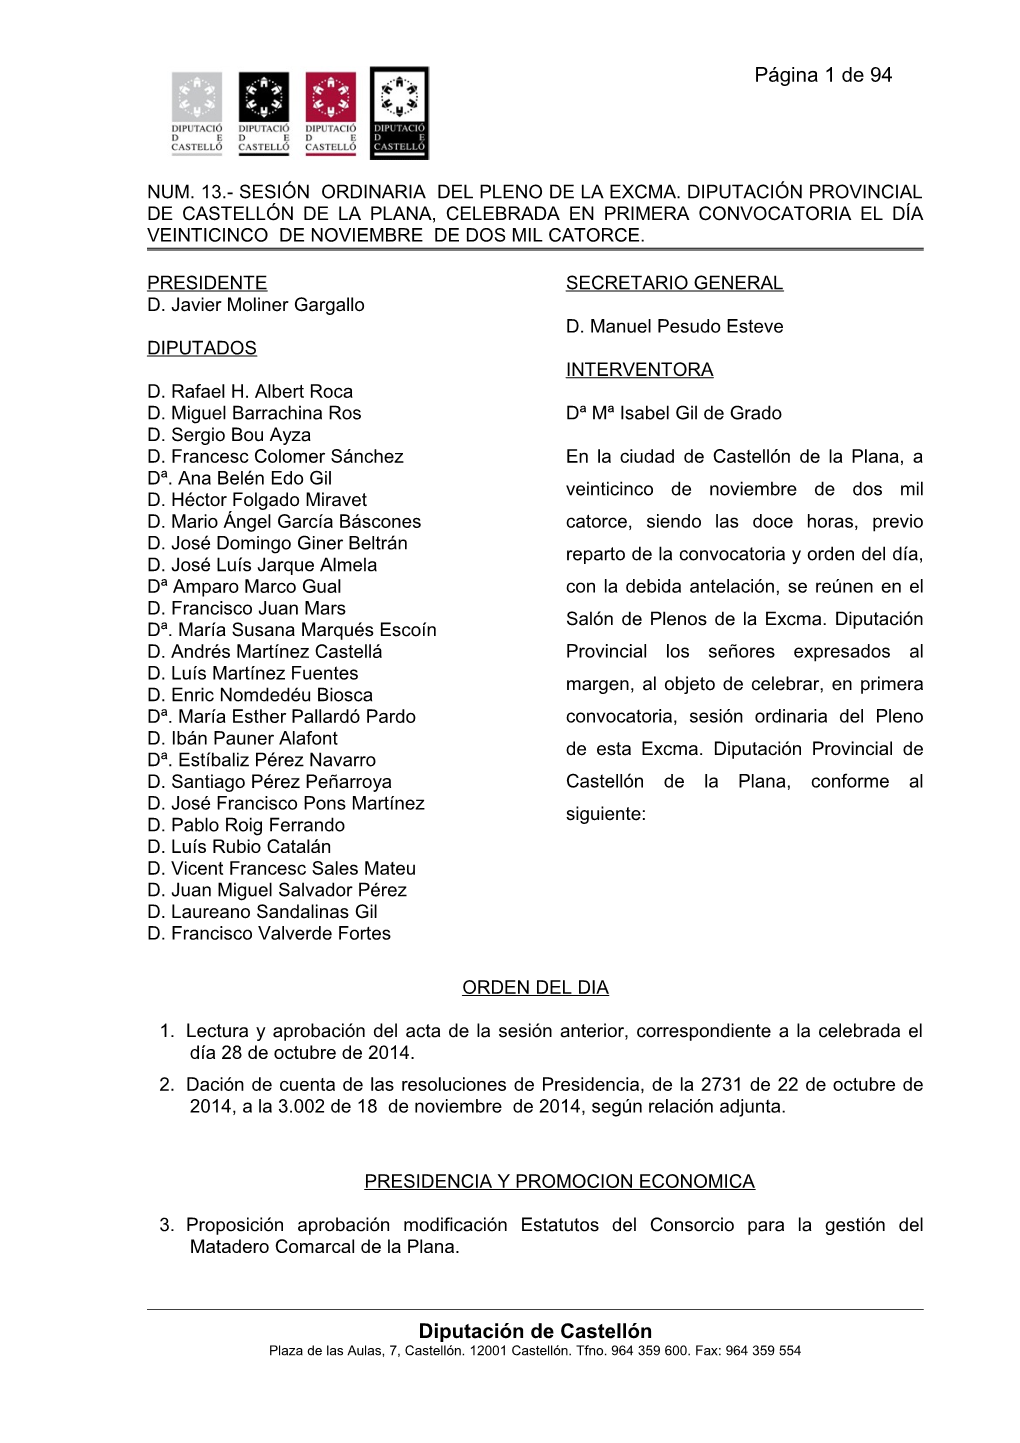 Página 1 De 94 Diputación De Castellón